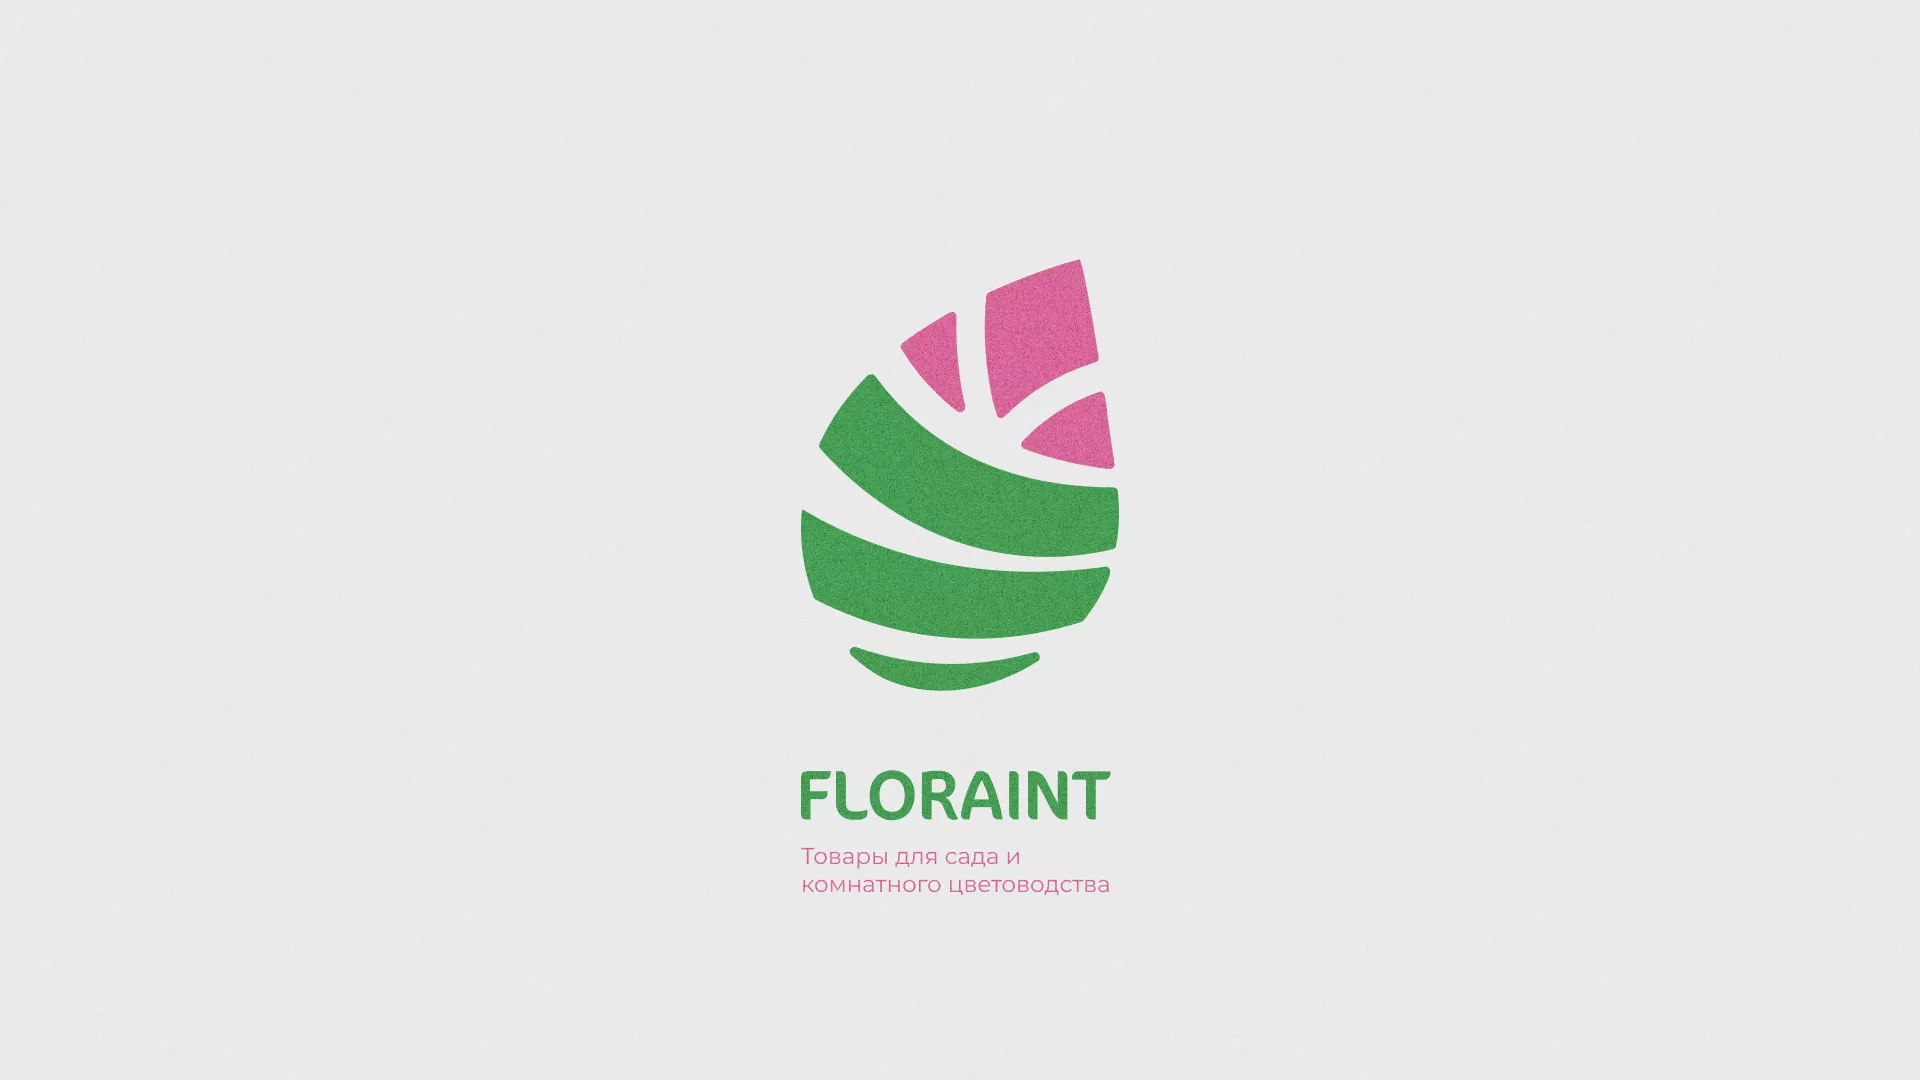 Разработка оформления профиля Instagram для магазина «Floraint» в Пудоже